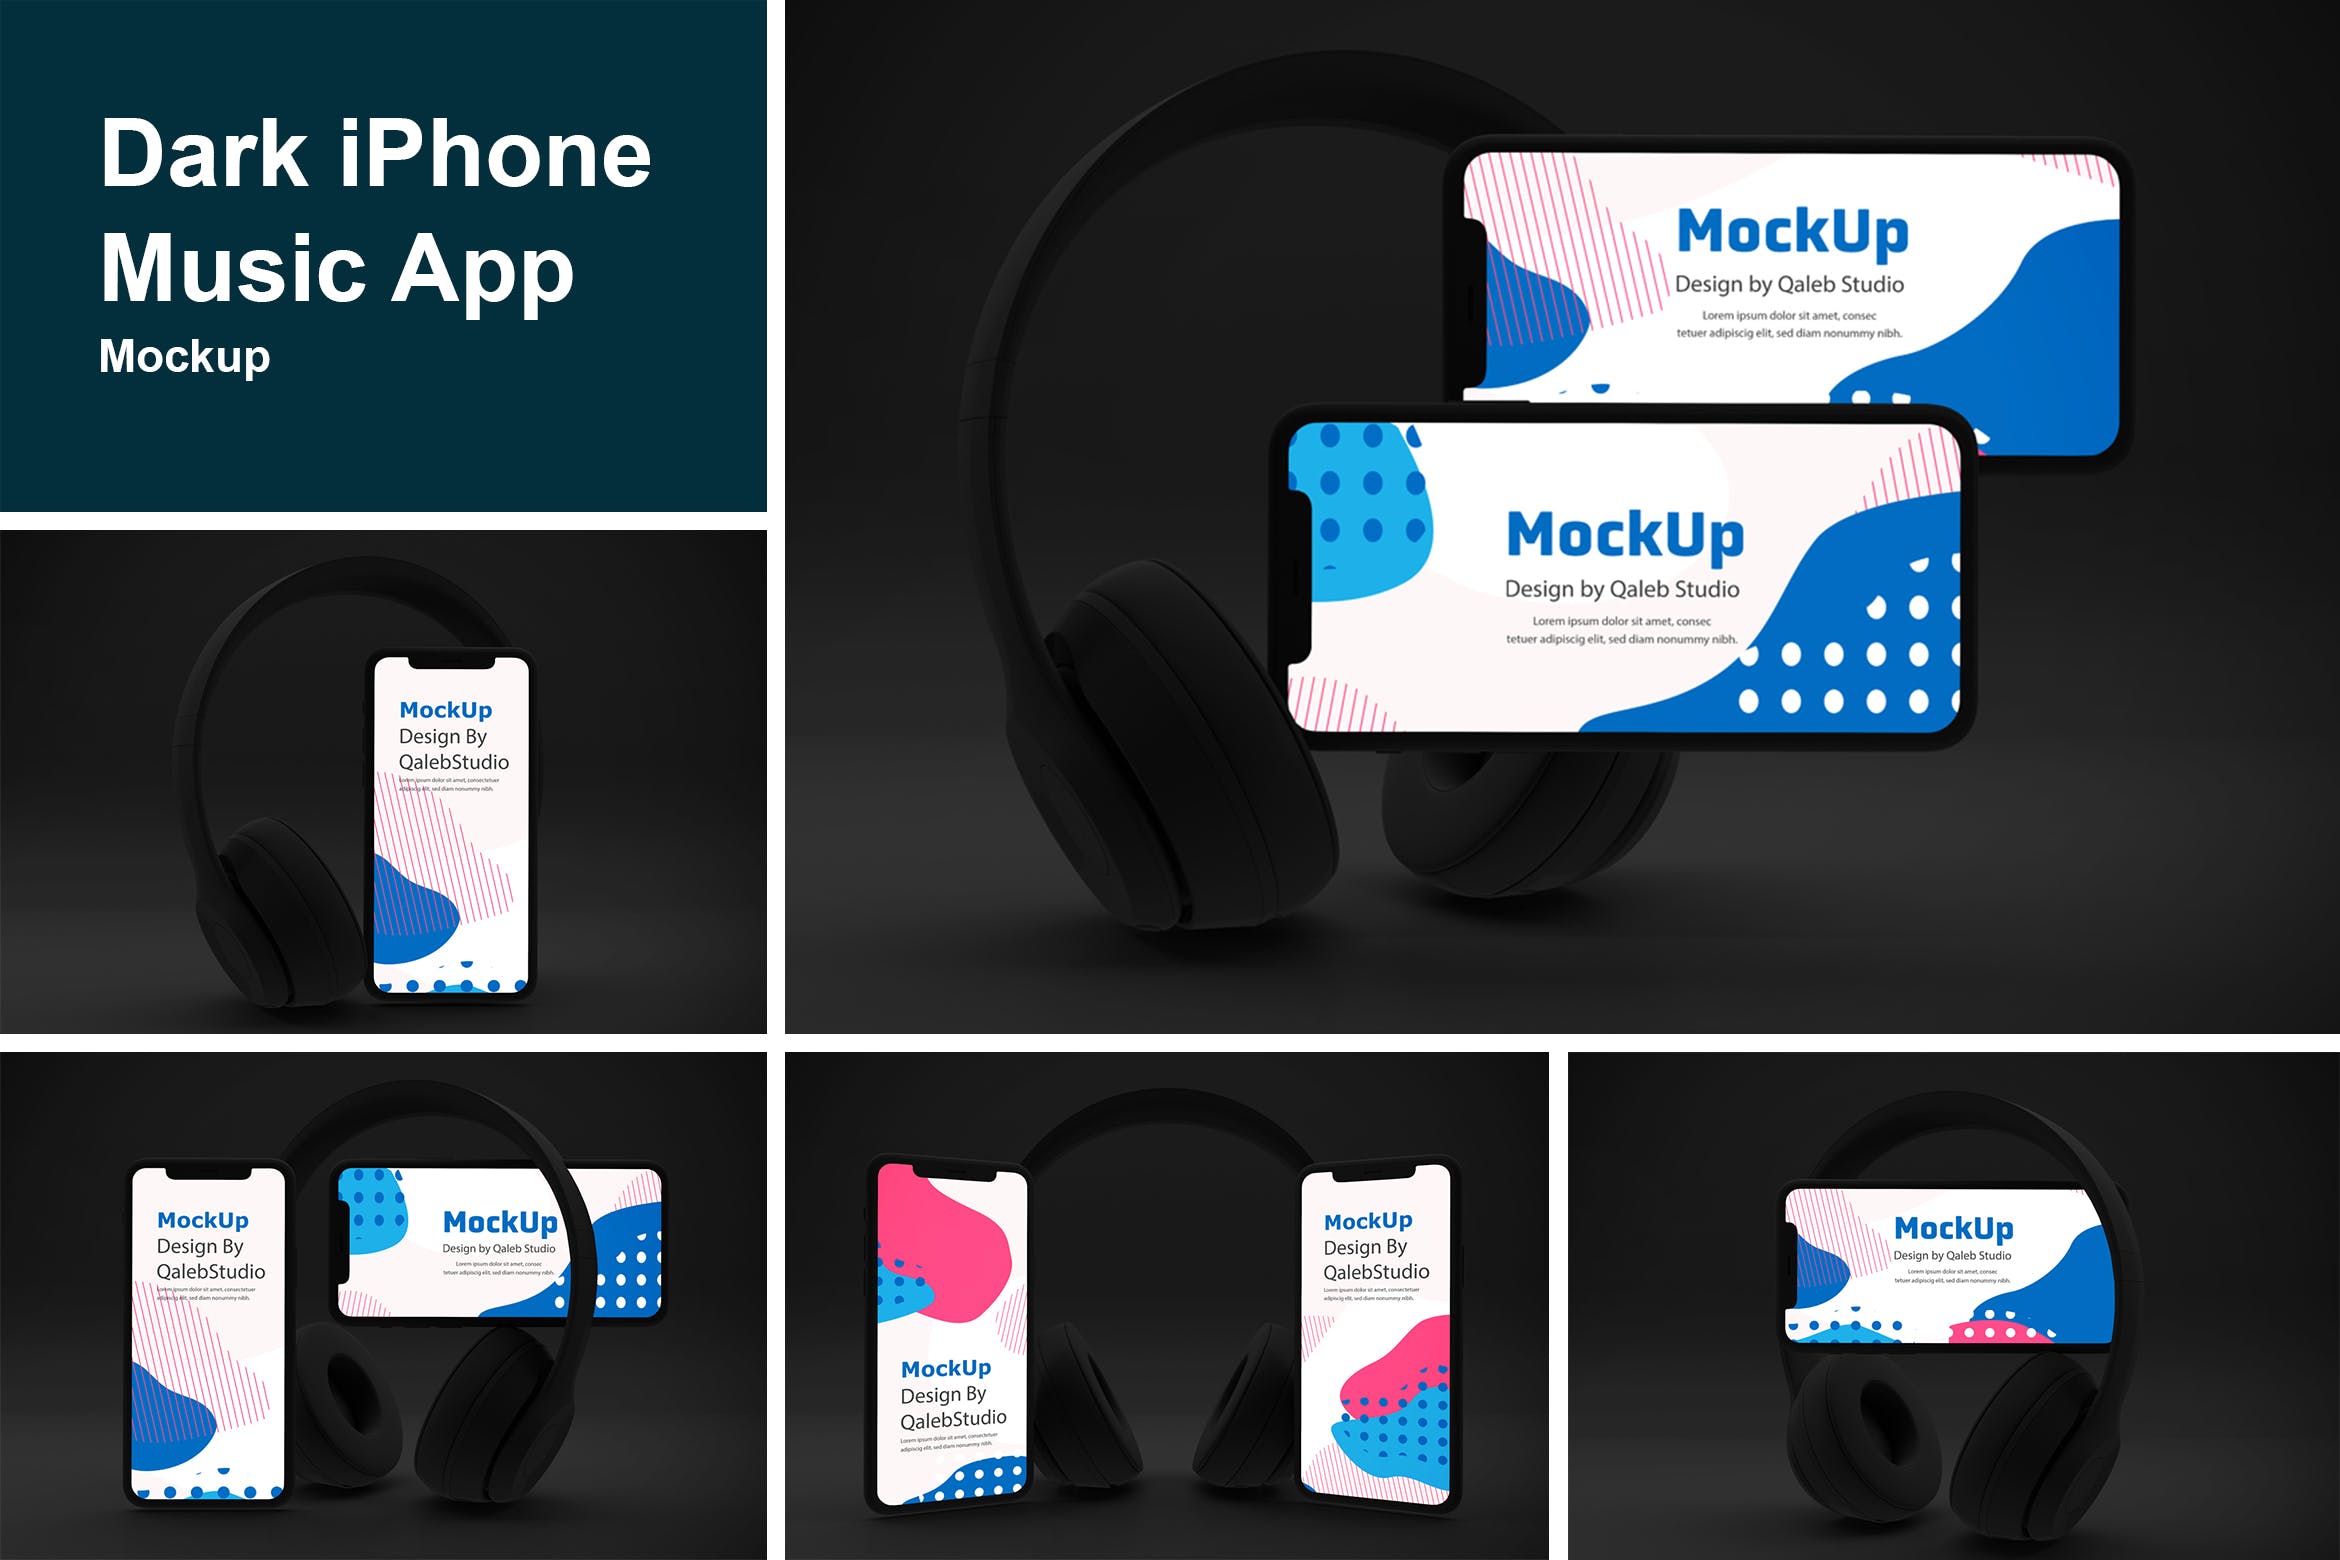 深色背景iPhone音乐APP应用UI设计效果图蚂蚁素材精选样机 Dark iPhone Music App Mockup插图